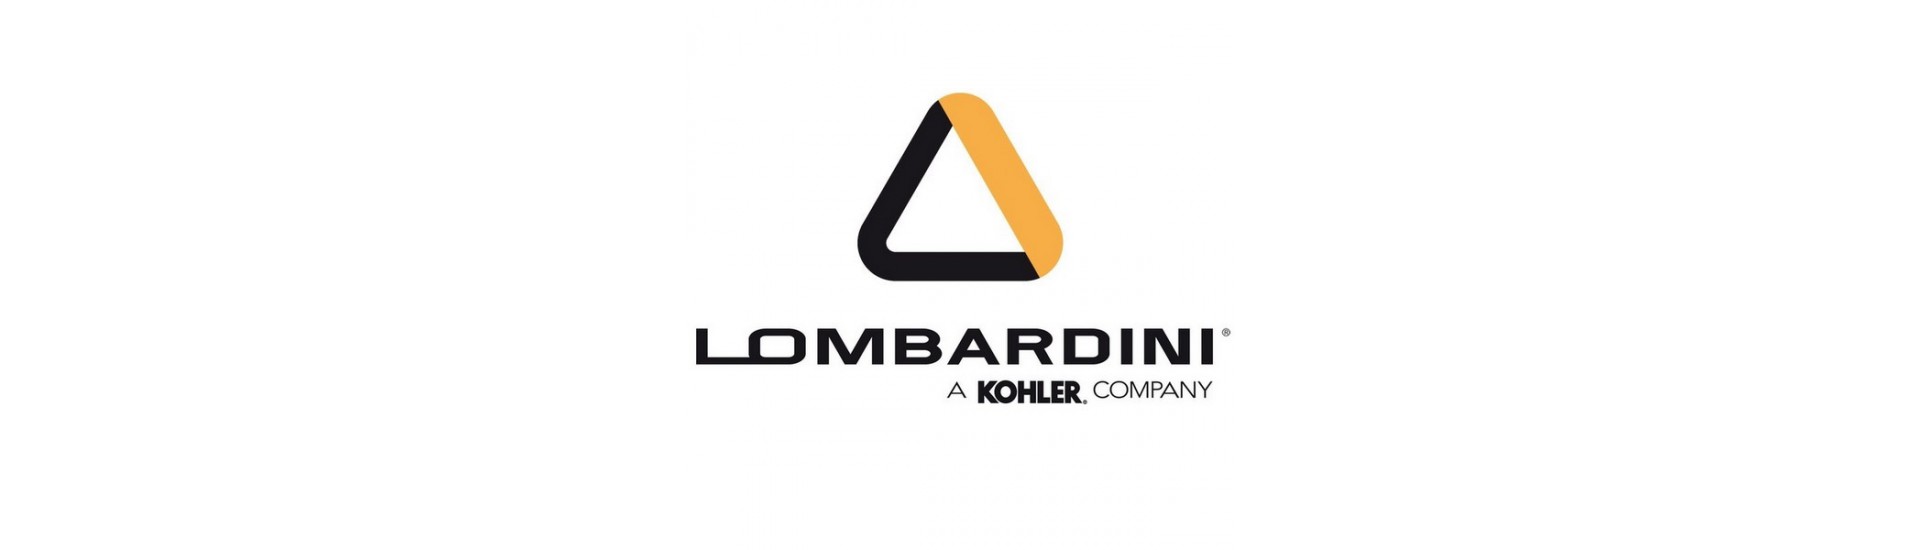 Sonde de température Lombardini au meilleur prix voiture sans permis